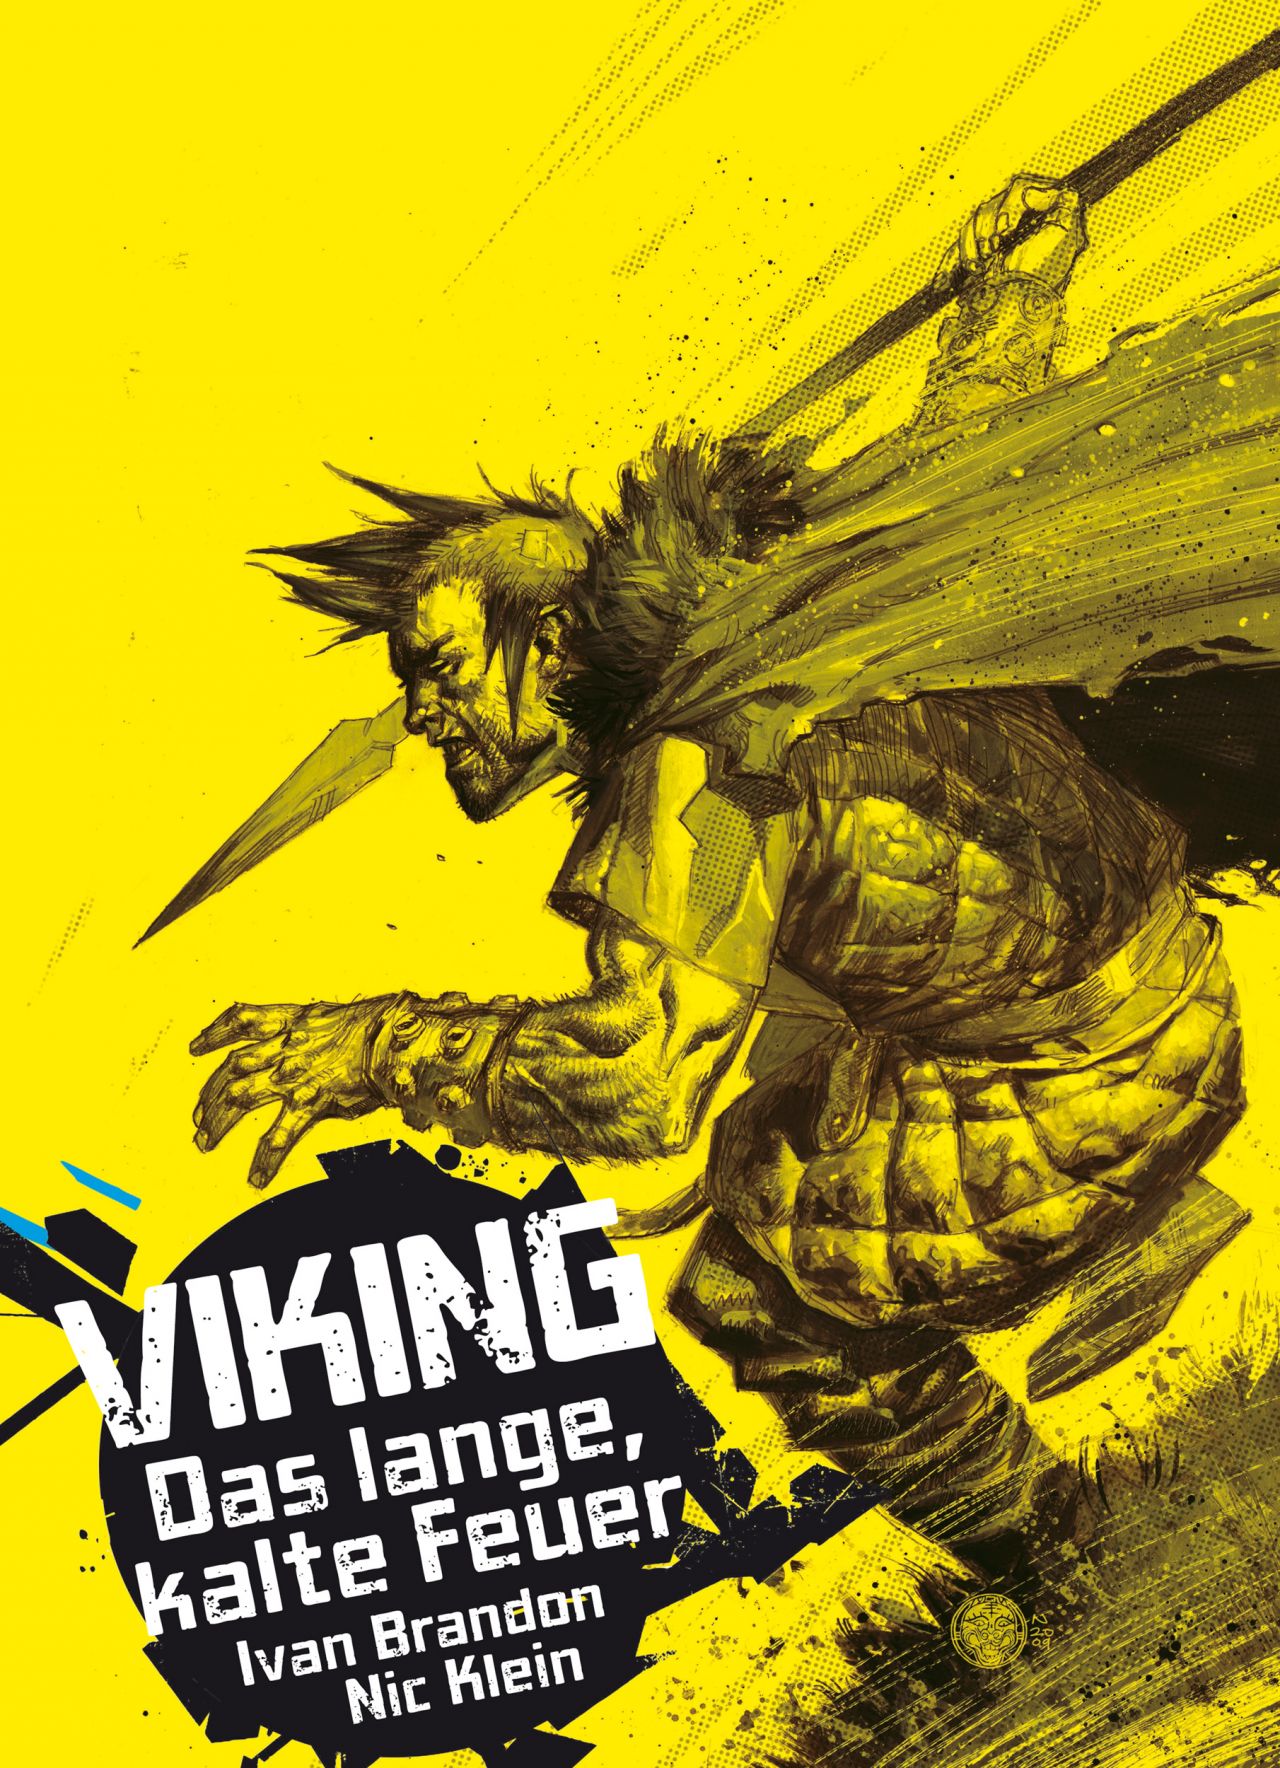 Comic-Kritik "Viking - Das lange, kalte Feuer"